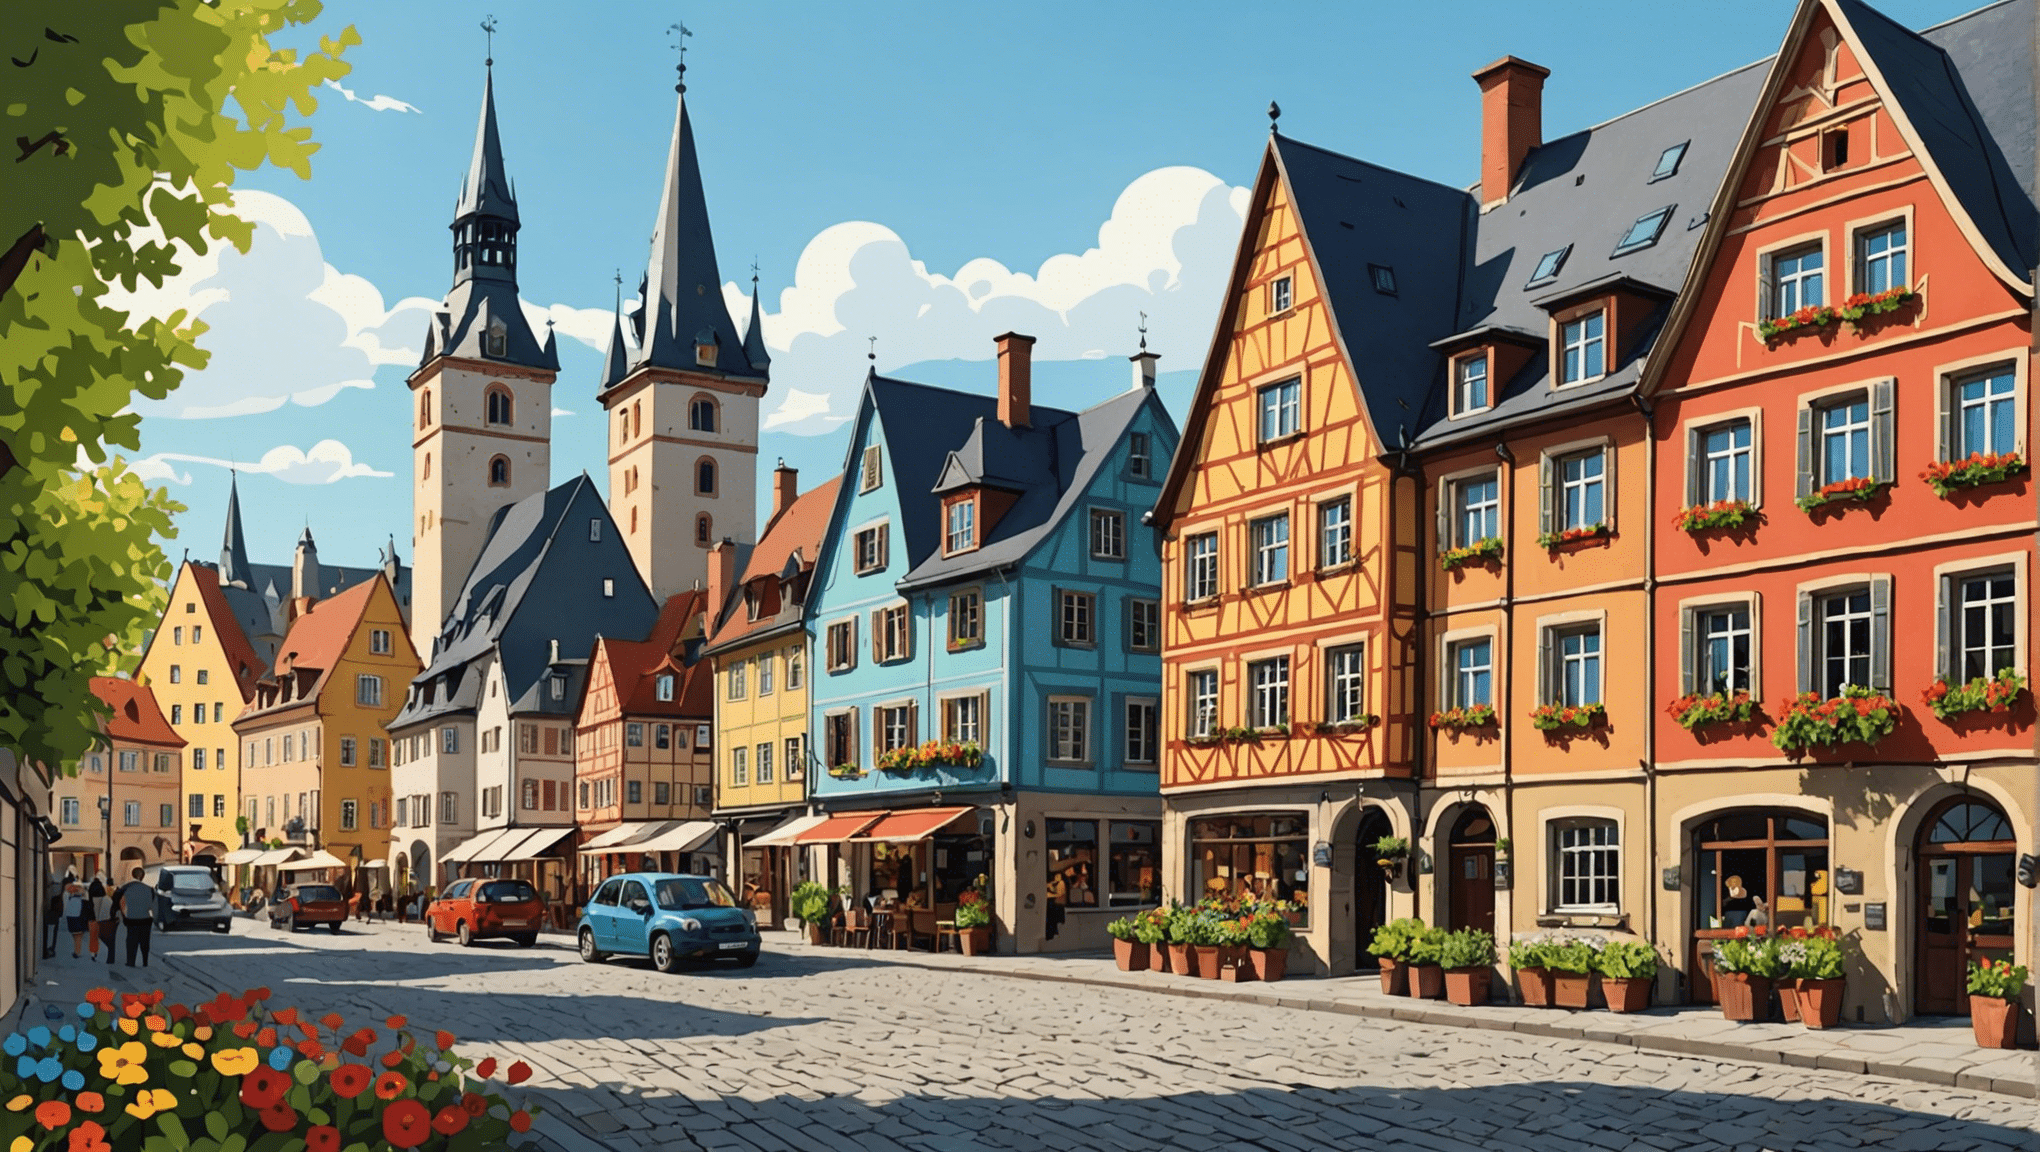 descubra como funciona a gorjeta na Alemanha: regras, usos e conselhos para um serviço gratificante em restaurantes e hotéis alemães.